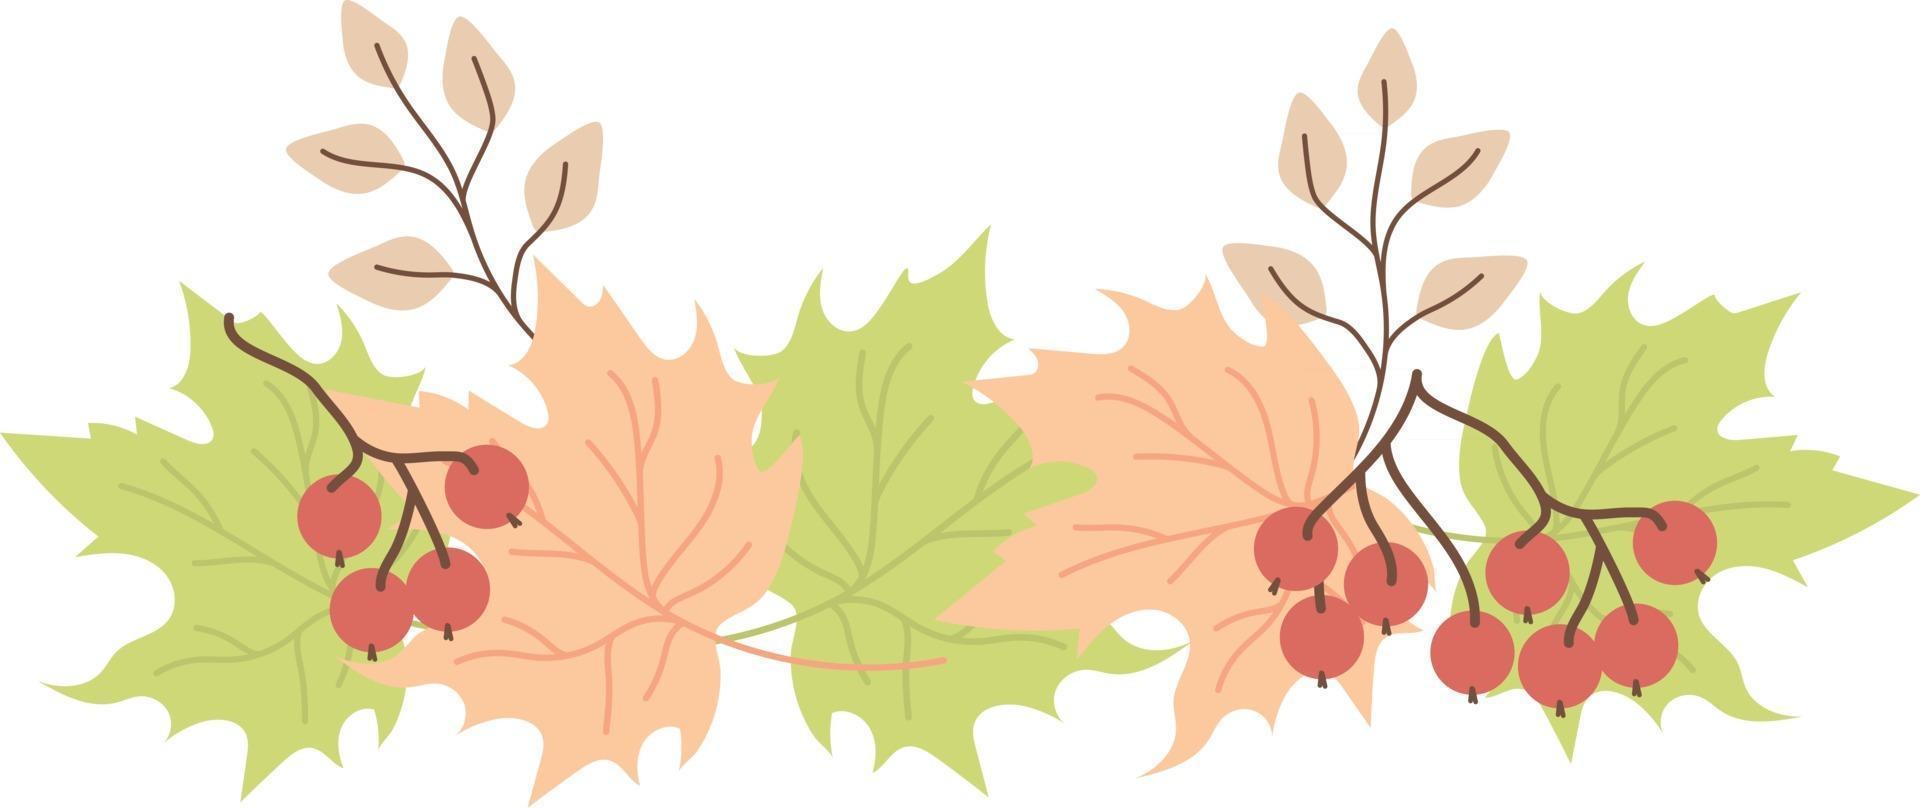 patrón horizontal de hojas de otoño vector